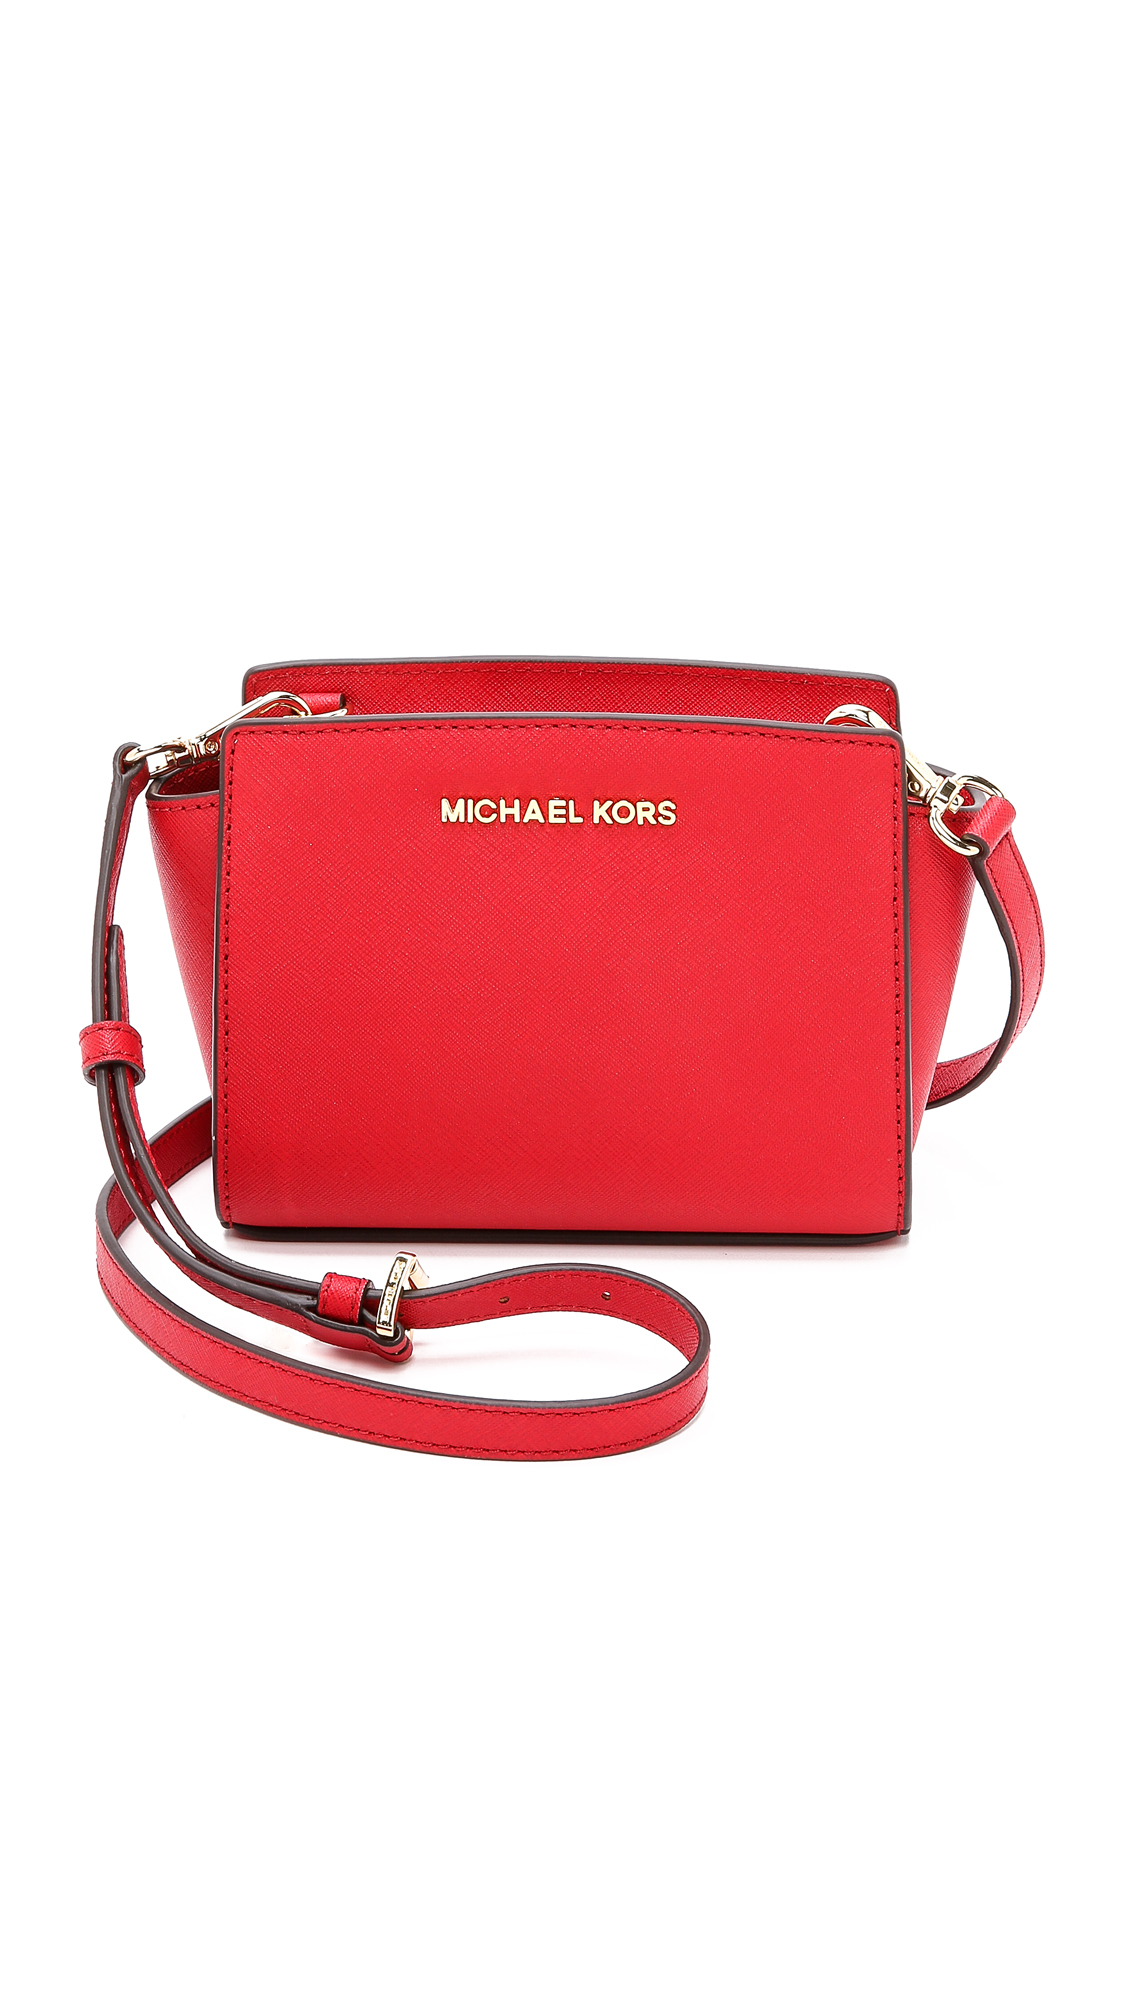 MICHAEL Michael Kors Selma Mini Messenger Bag - Pale Pink in Red - Lyst